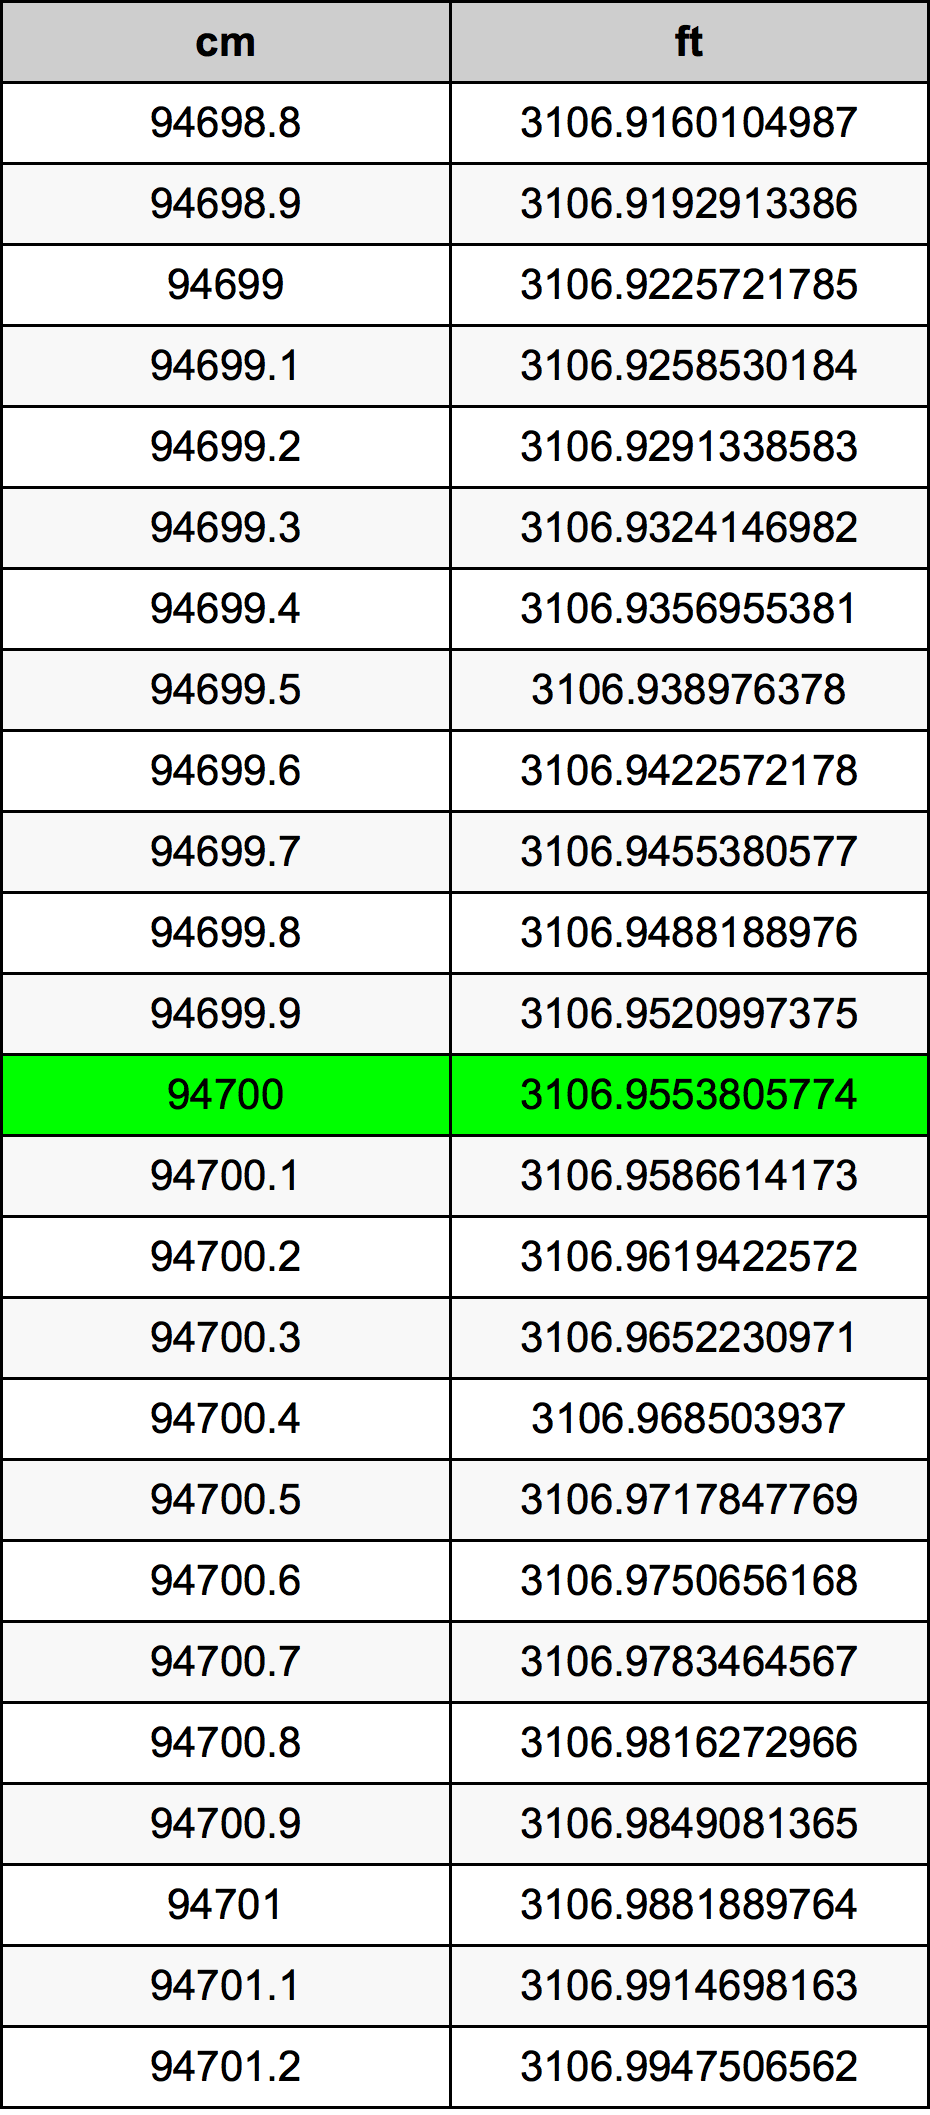 94700 ċentimetru konverżjoni tabella